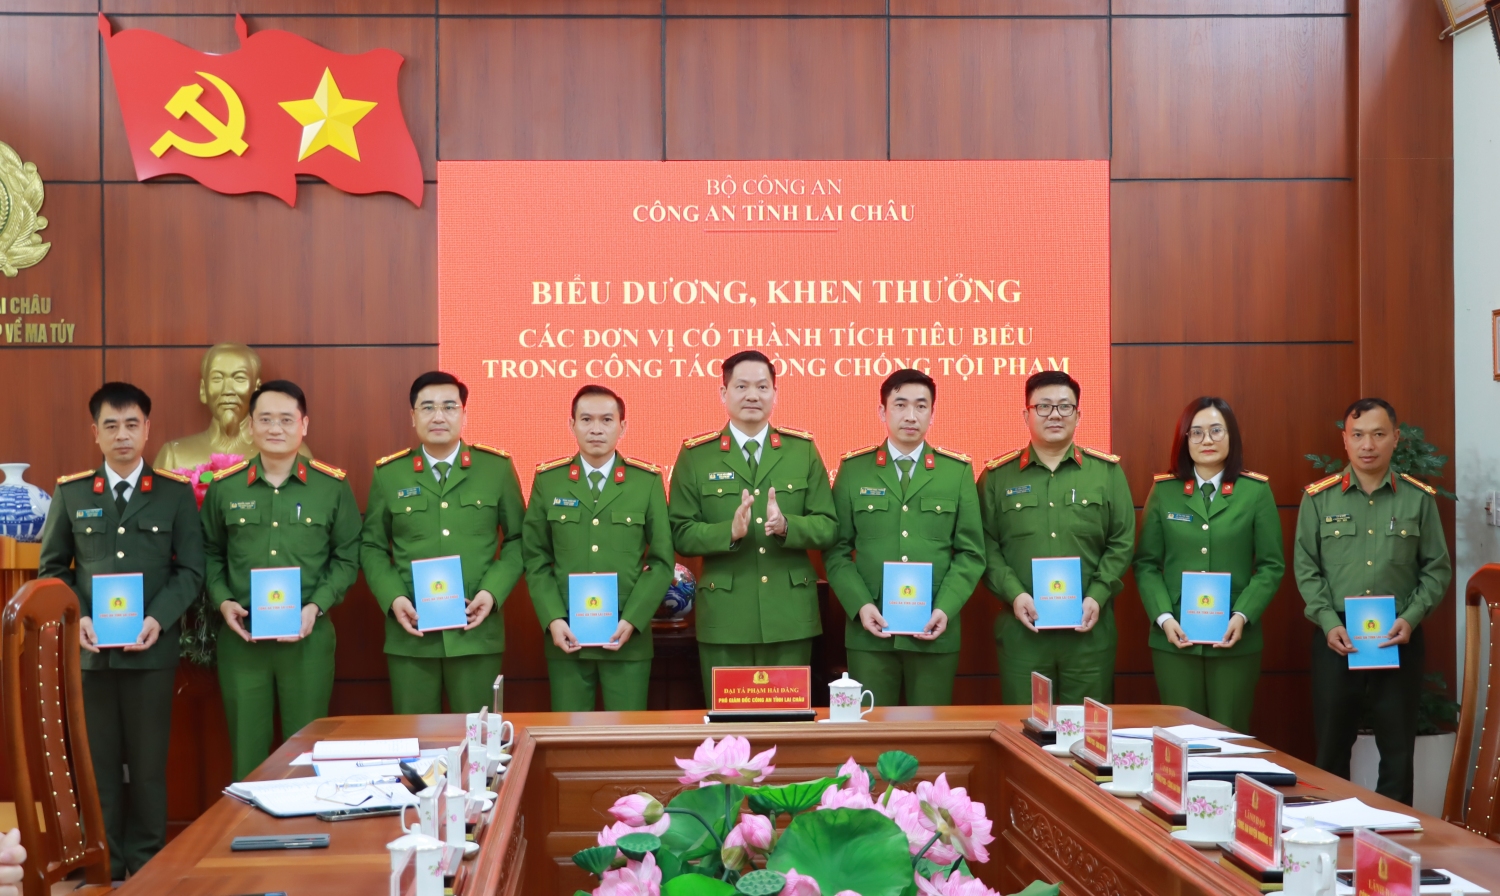 Đại tá Phạm Hải Đăng - Phó Giám đốc Công an tỉnh biểu dương, khen thưởng các tập thể có thành tích trong đấu tranh các vụ án